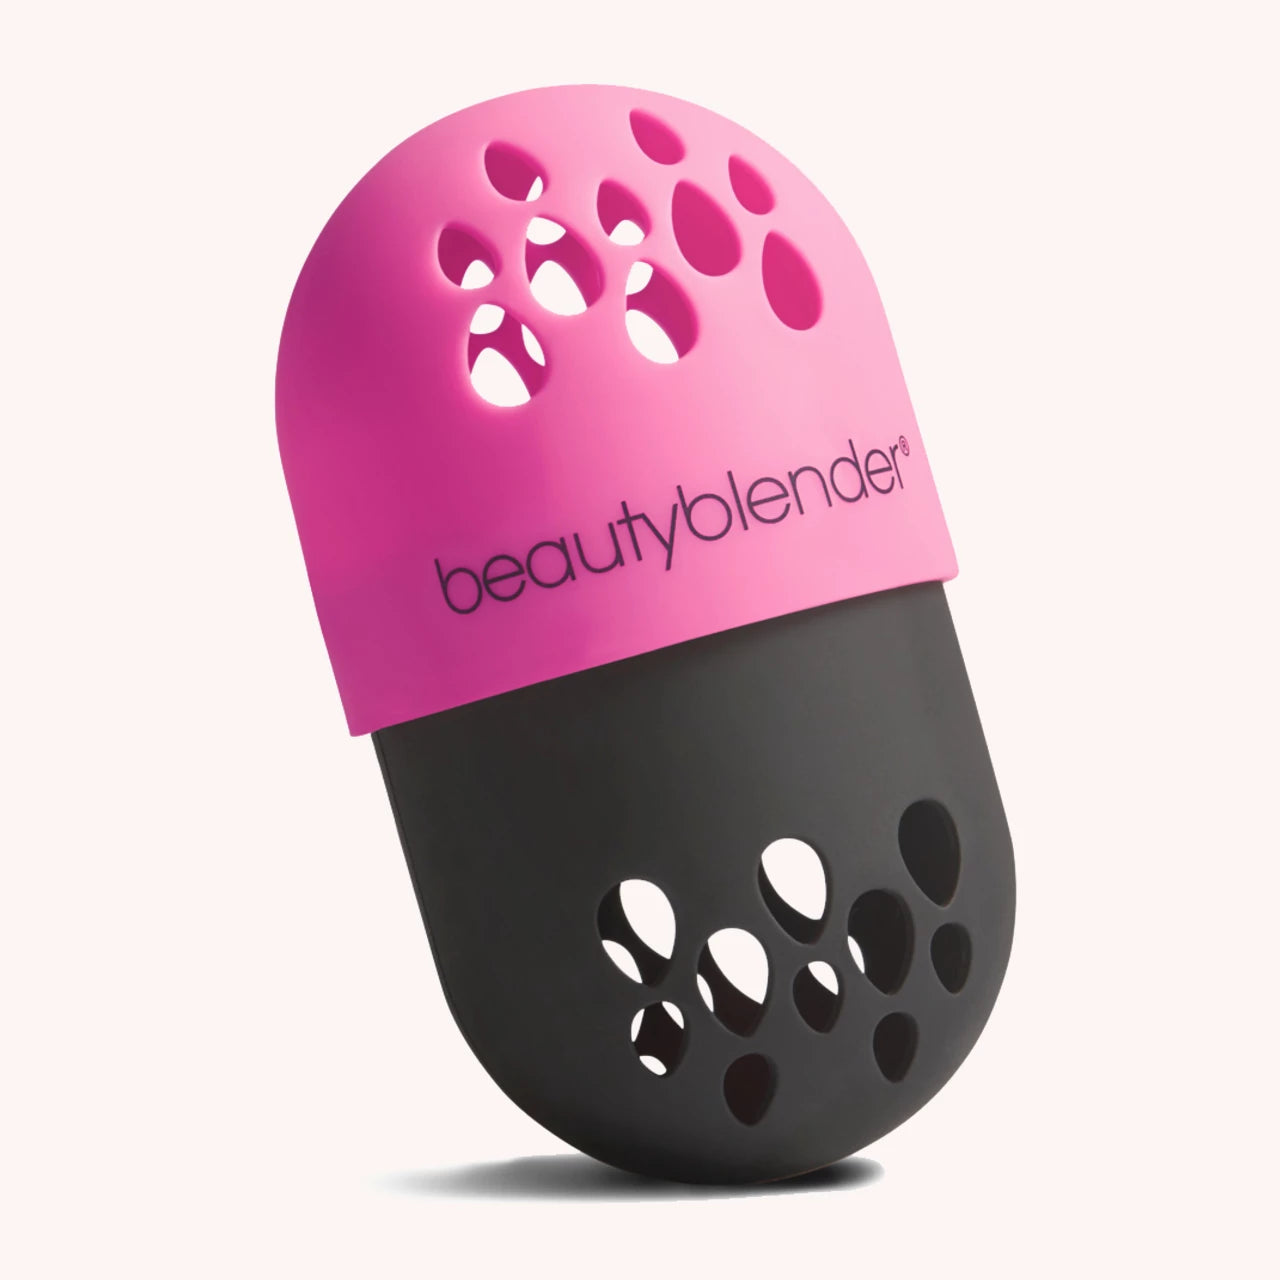 Beautyblender blender defender - www.Hudonline.no 